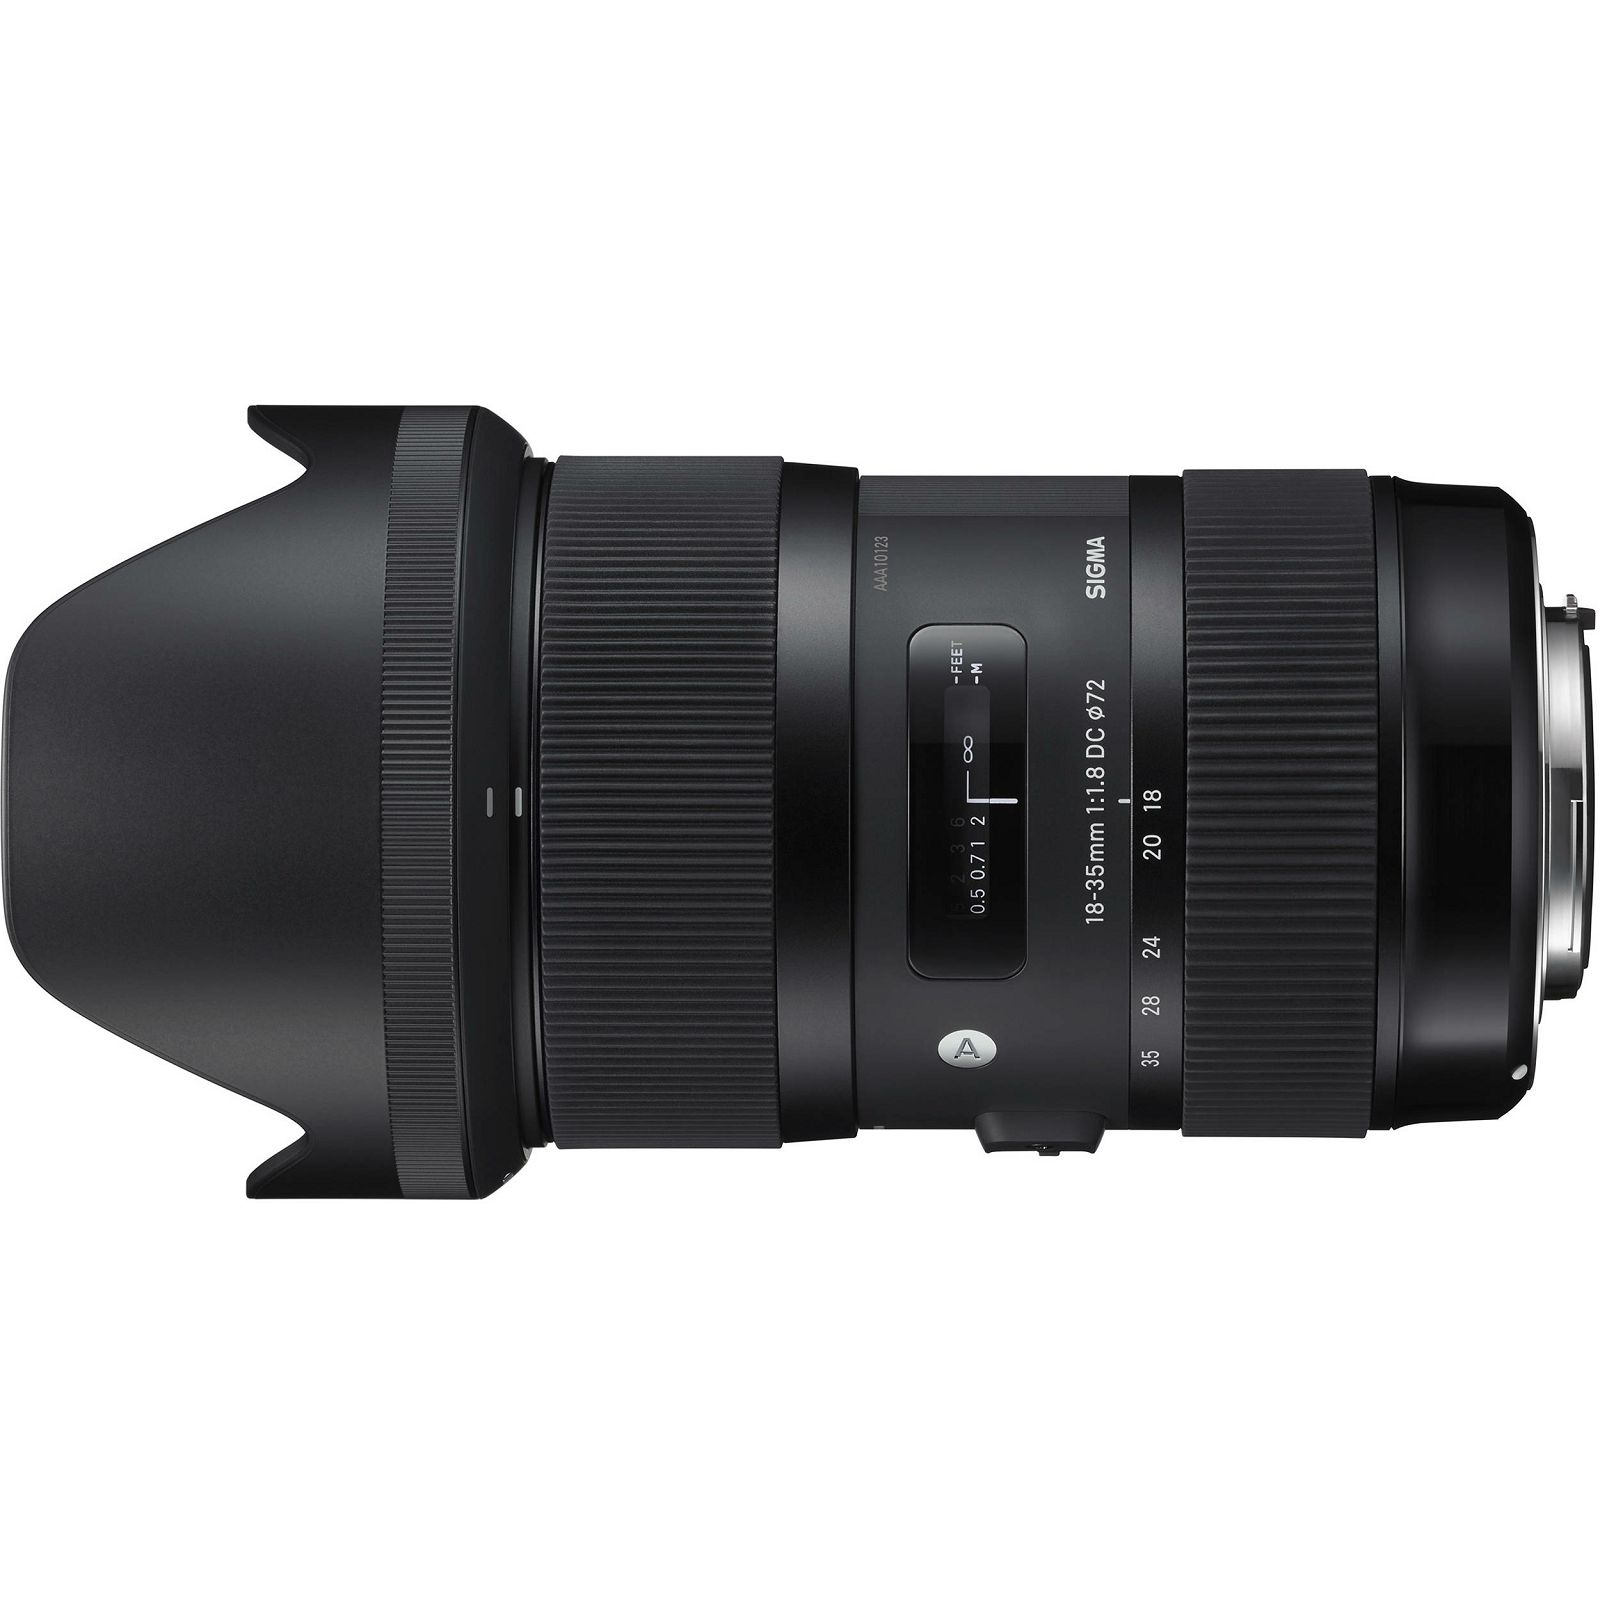 Sigma 18-35mm f/1.8 DC HSM ART širokokutni objektiv za Pentax 18-35 F/1,8 f1.8 wide angle zoom lens